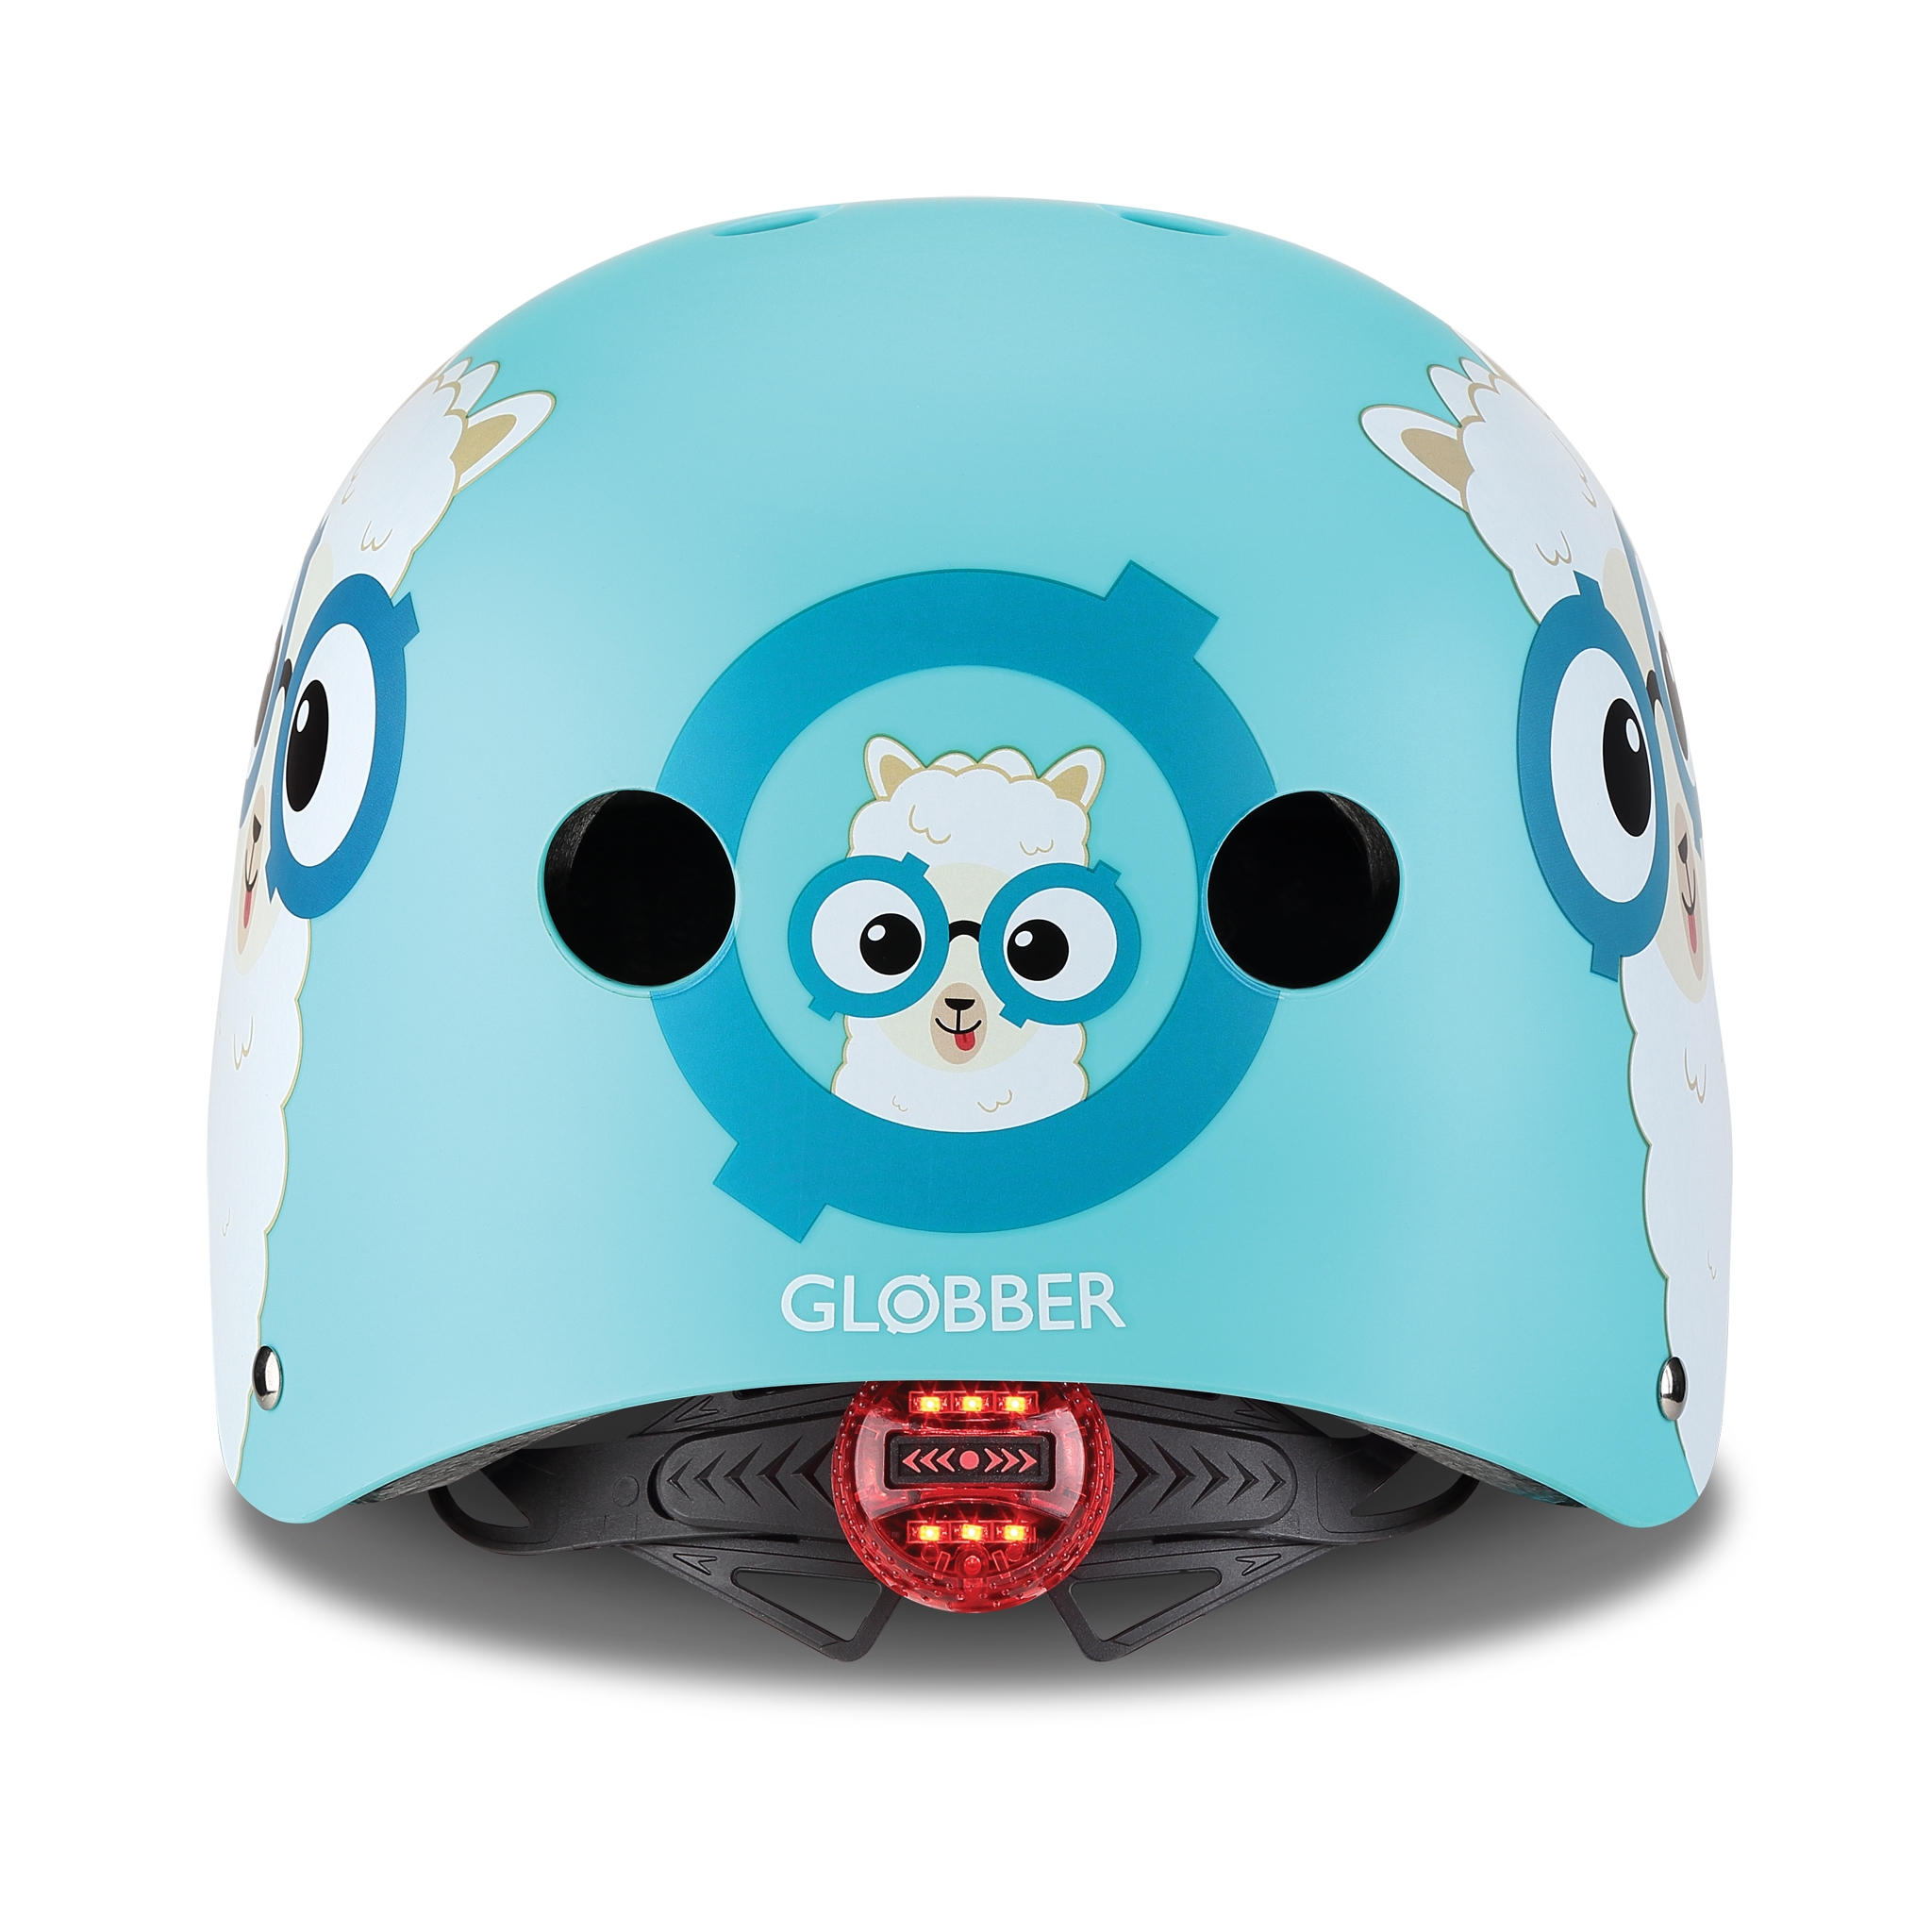 ELITE-helmets-scooter-helmets-for-kids-with-LED-lights-safe-helmet-for-kids-blue 1